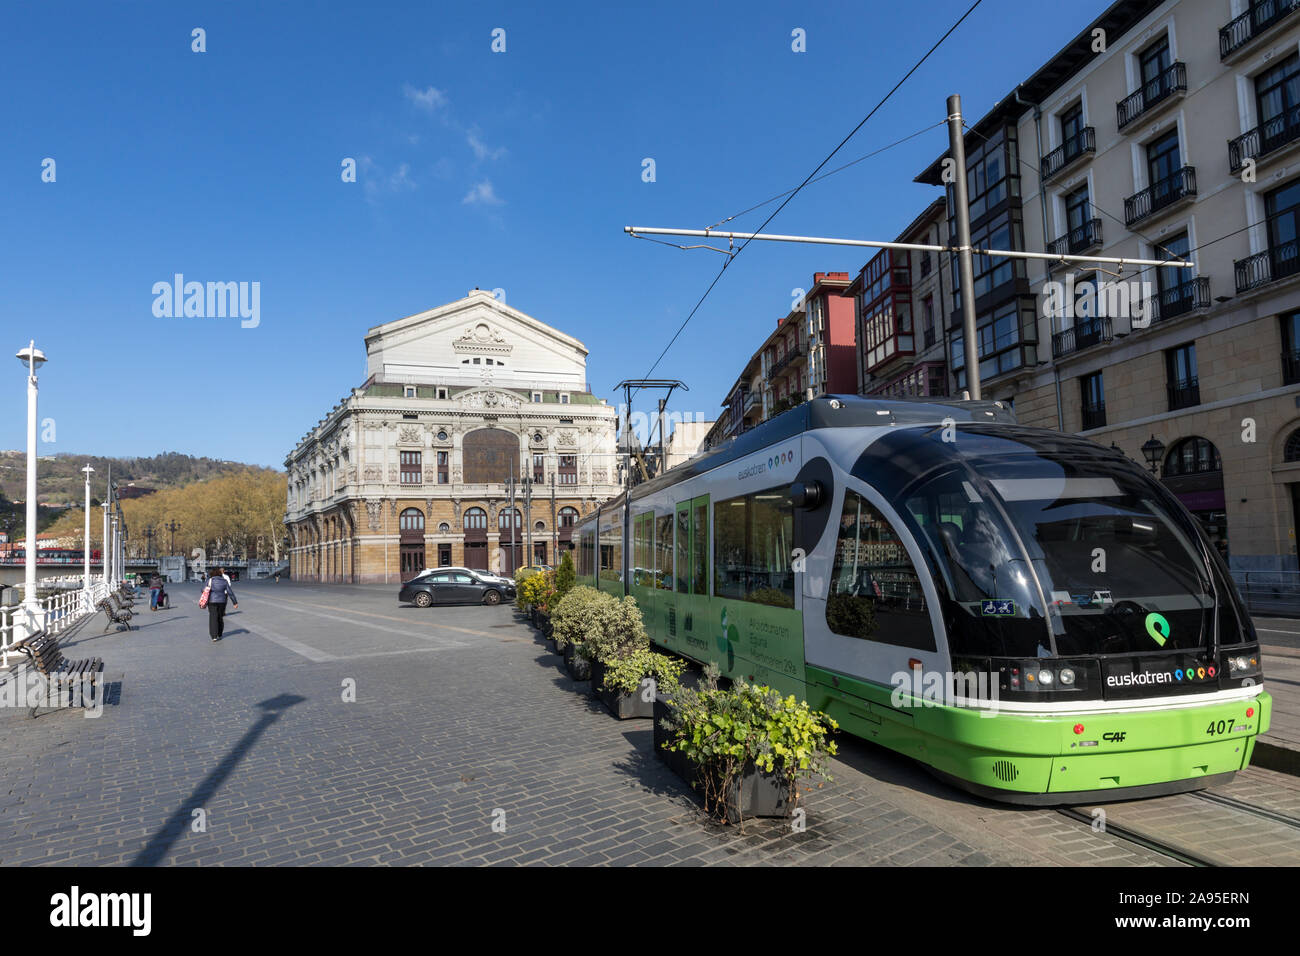 Elektrische Straßenbahn Transportsystem mit dem Teatro Arriaga Theater im Hintergrund, im Stadtzentrum von Bilbao, Baskenland im Norden Spaniens Stockfoto